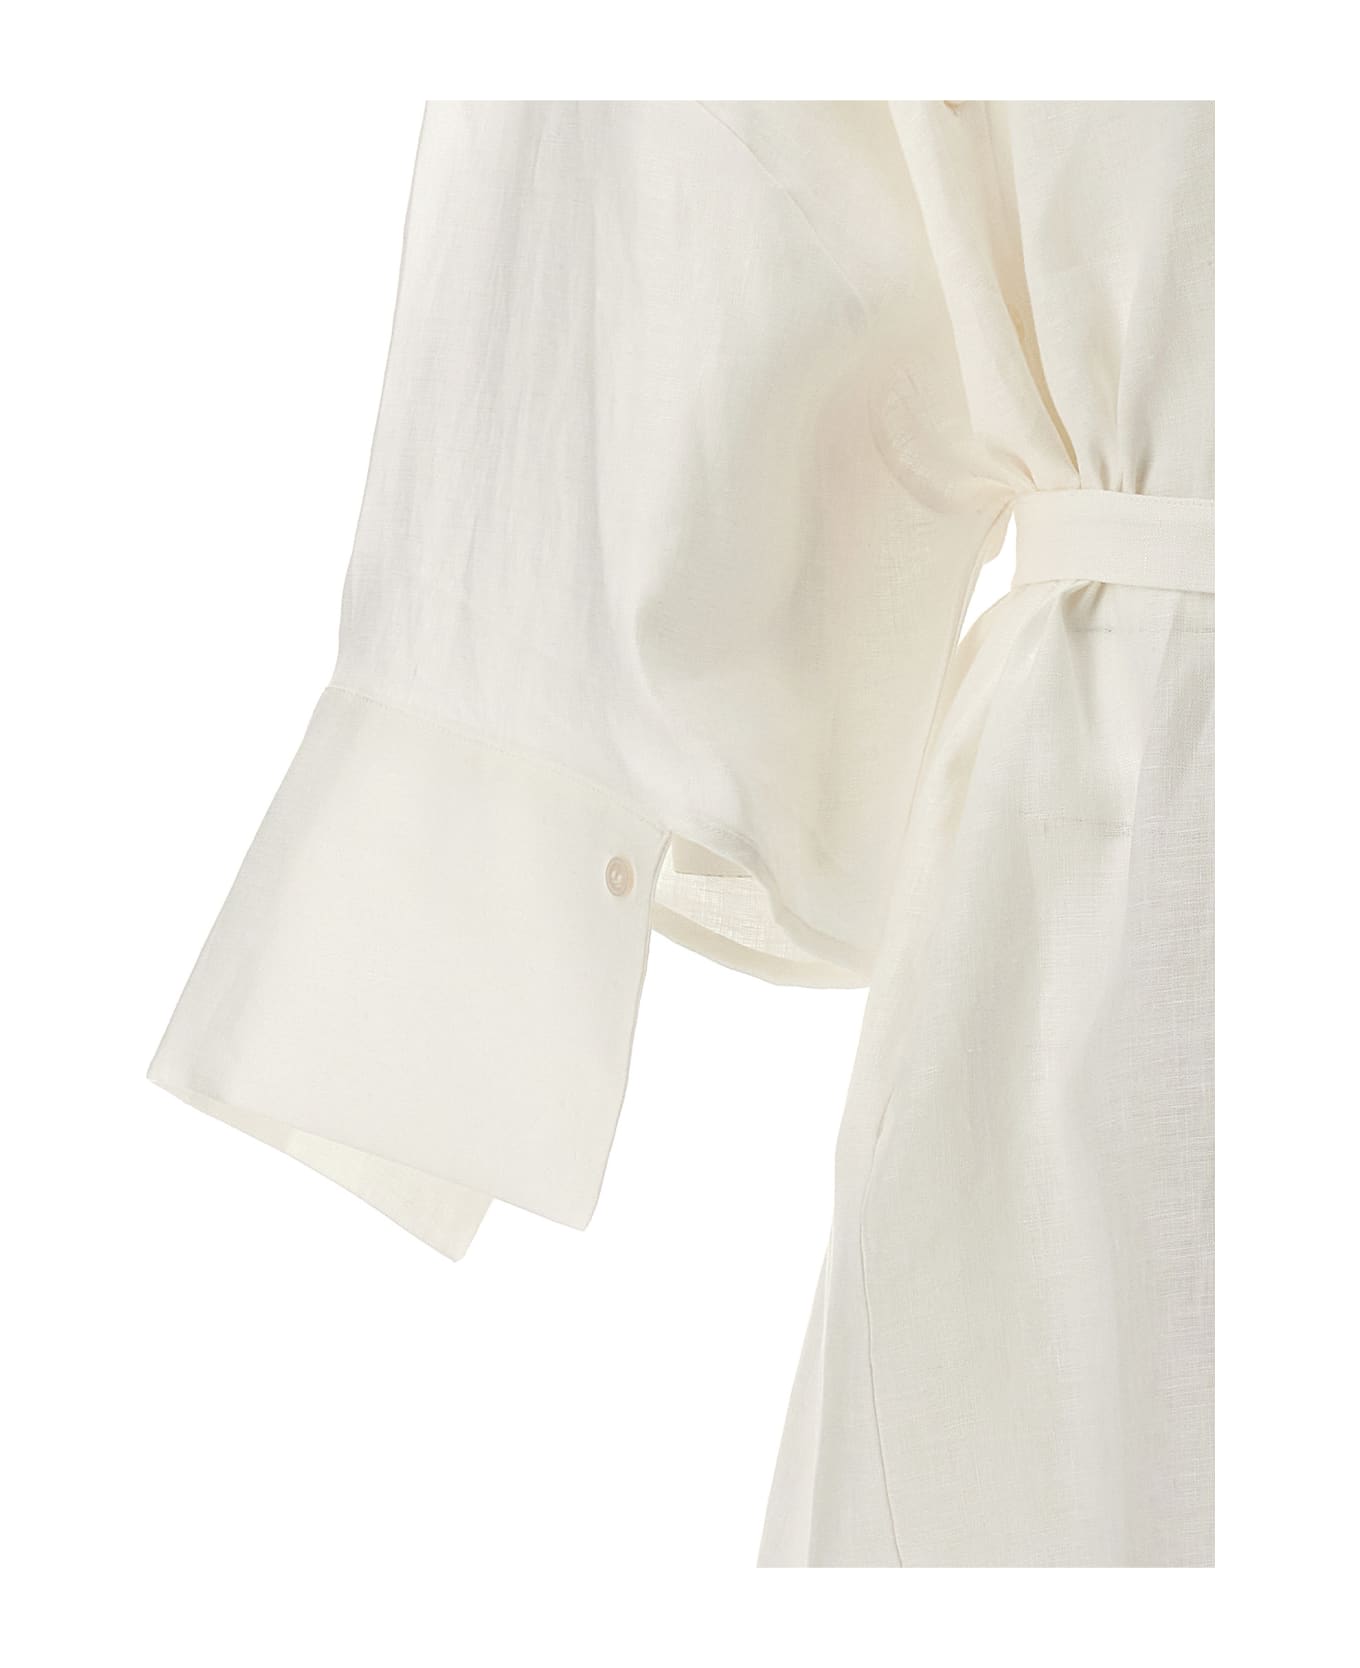 Balossa 'honami' Shirt Dress - White